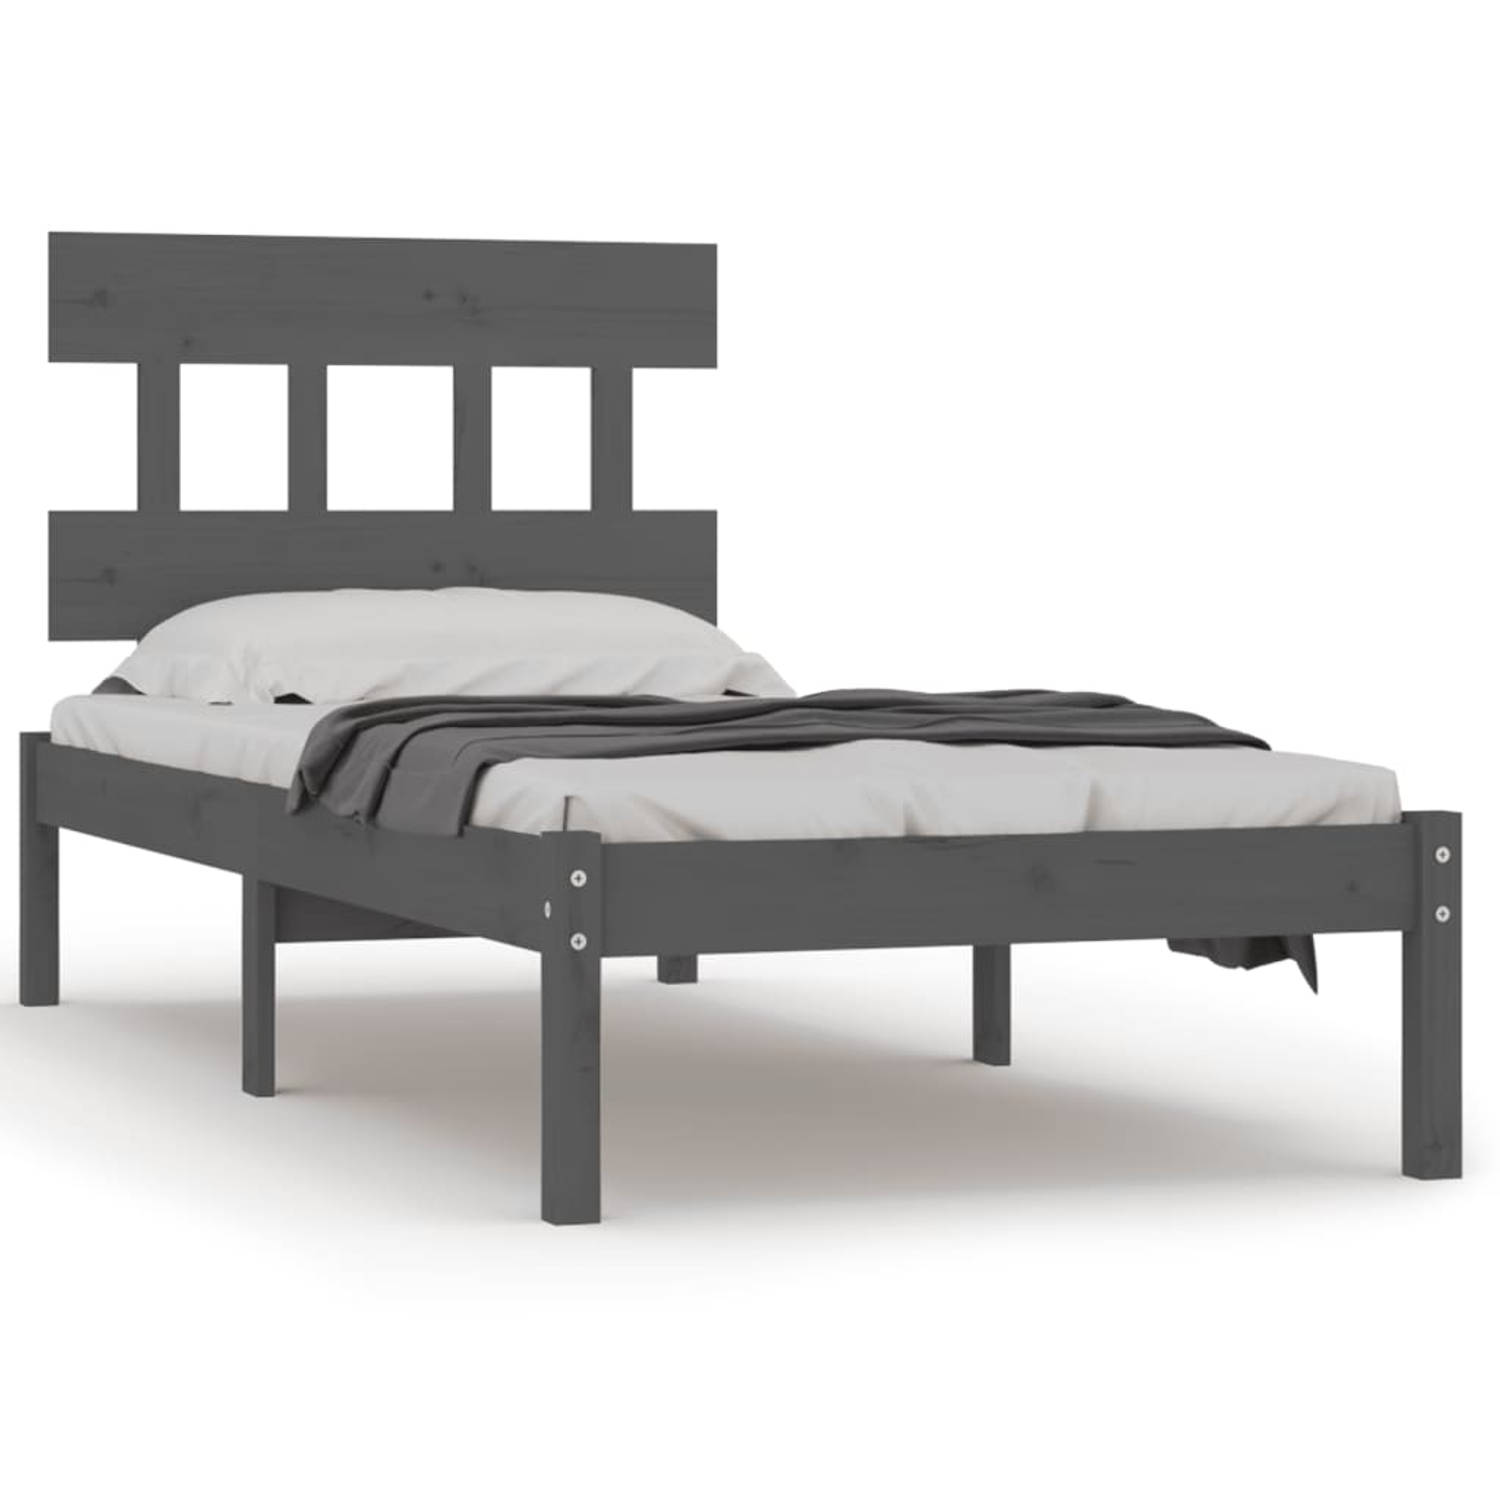 The Living Store Bedframe massief hout grijs 90x190 cm 3FT6 Single - Bedframe - Bedframes - Eenpersoonsbed - Bed - Bedombouw - Frame - Bed Frame - Ledikant - Bedframe Met Hoofdeind